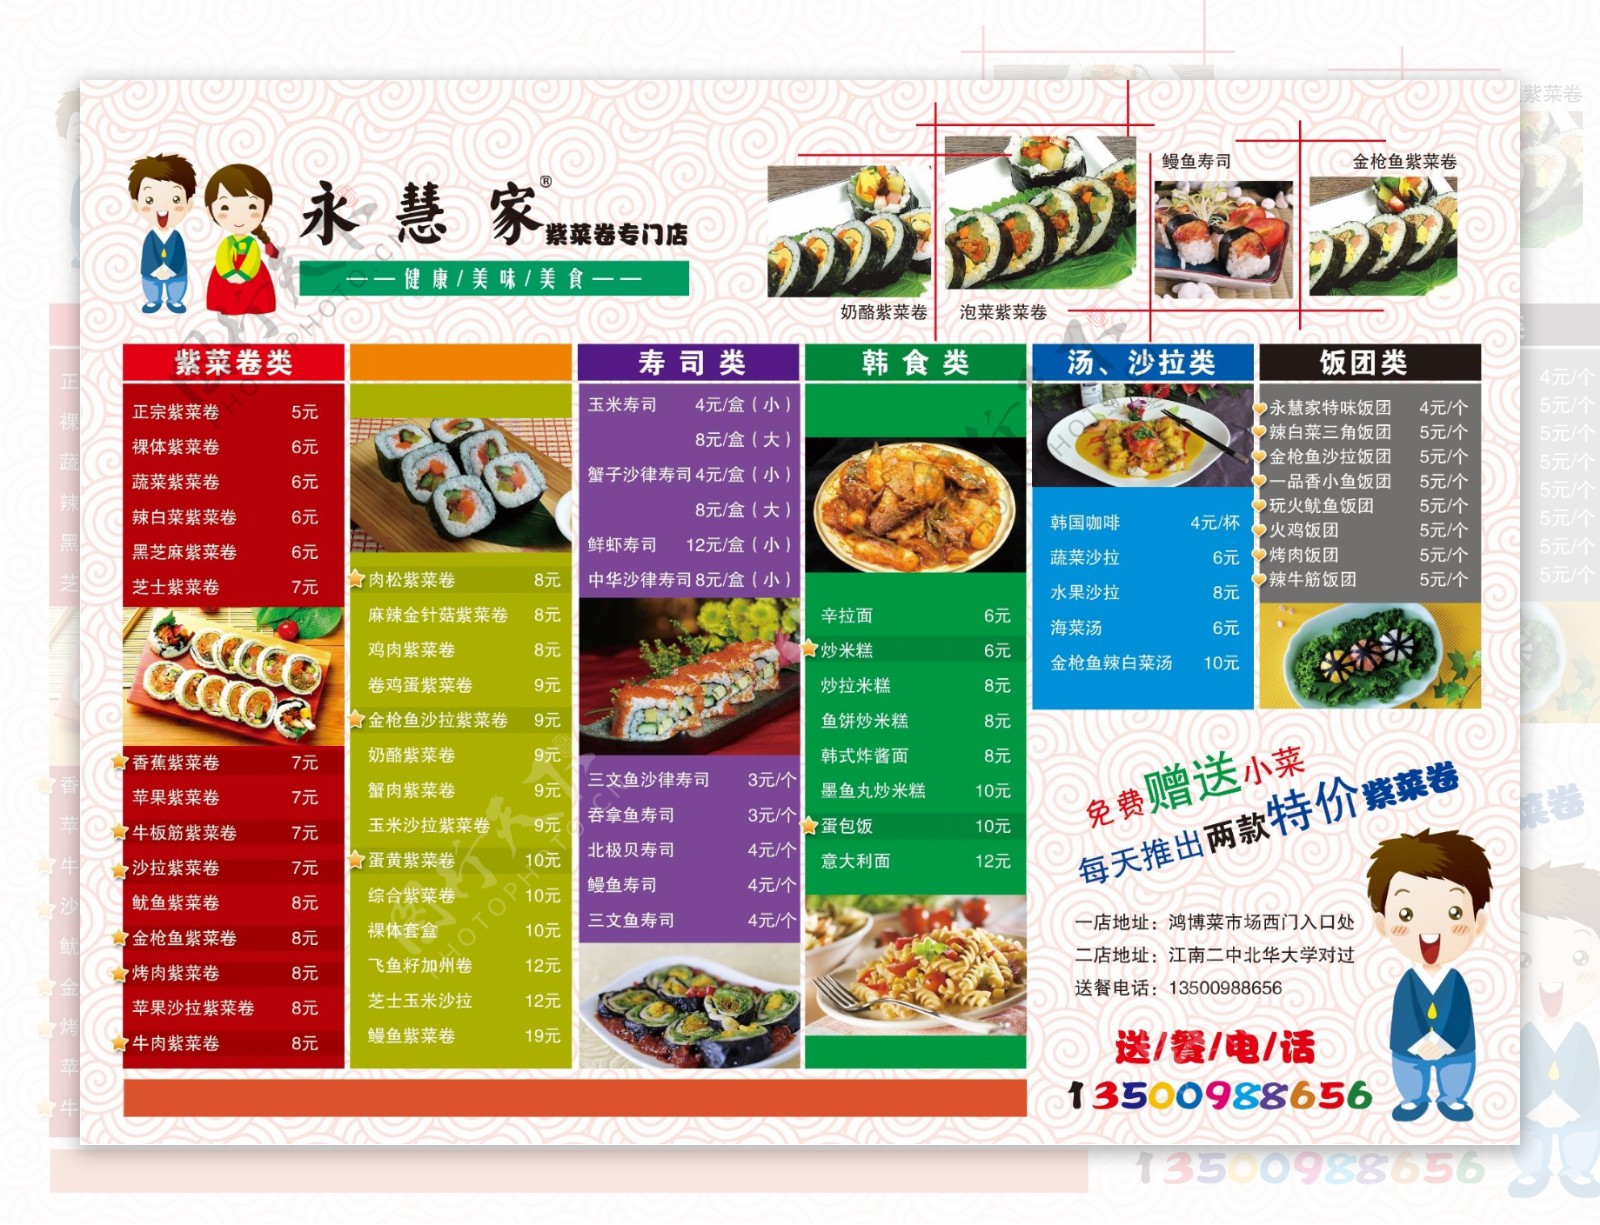 紫菜卷店宣传折页图片